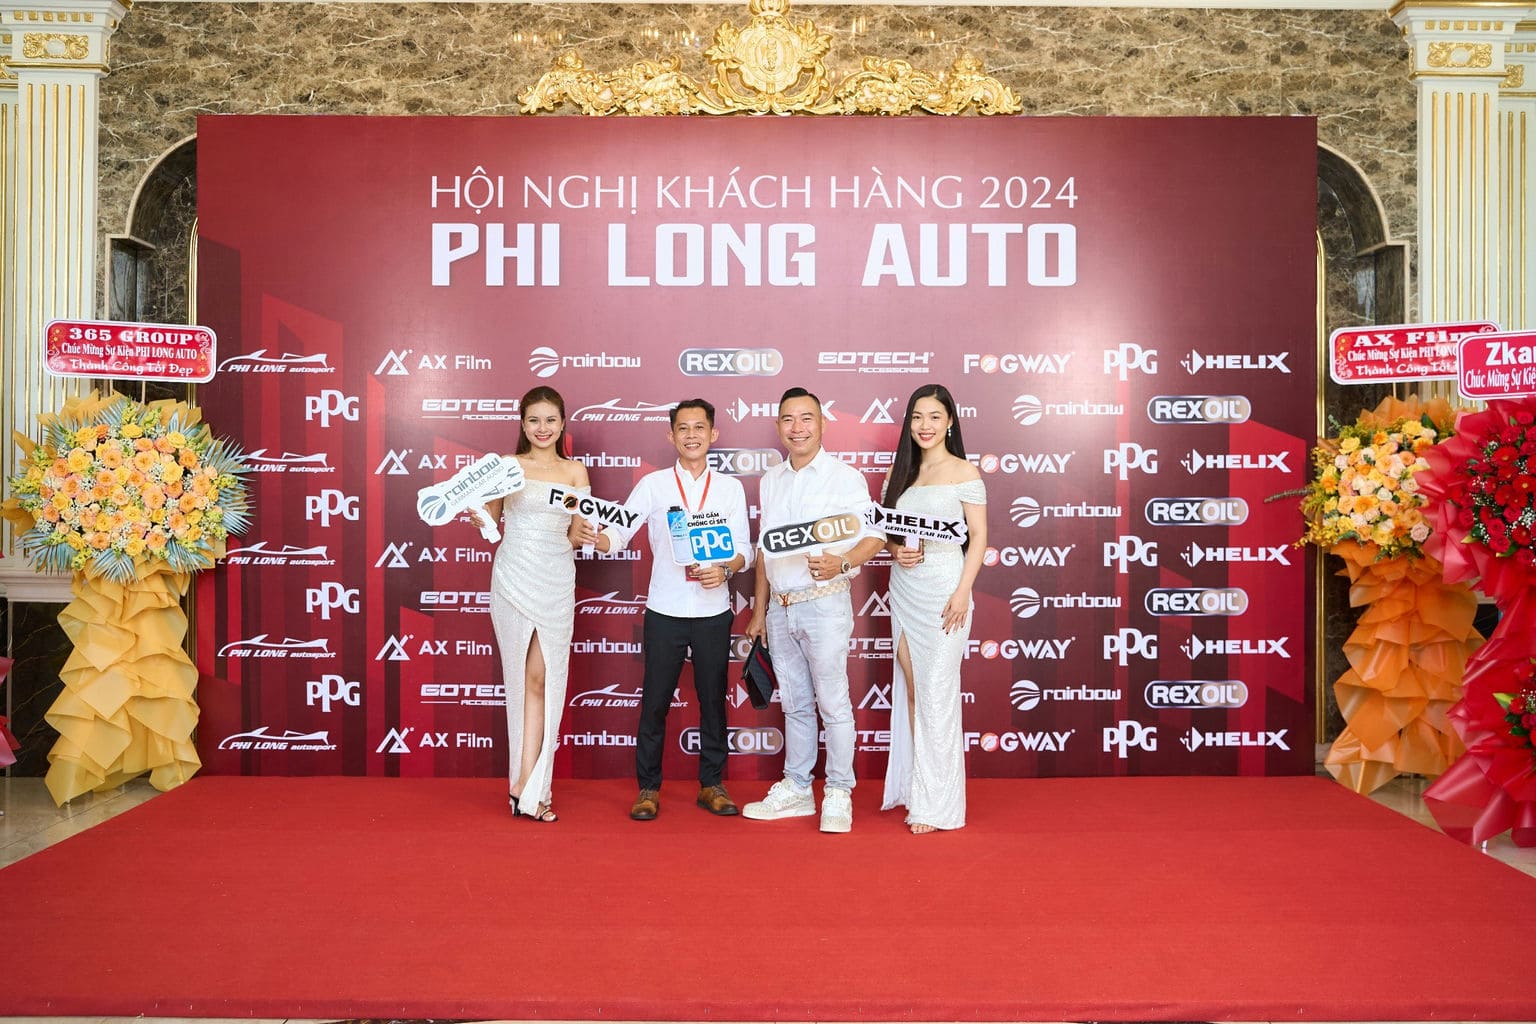 HOI NGHI KHACH HANG PHI LONG AUTO 2024 31 | Phi Long Auto